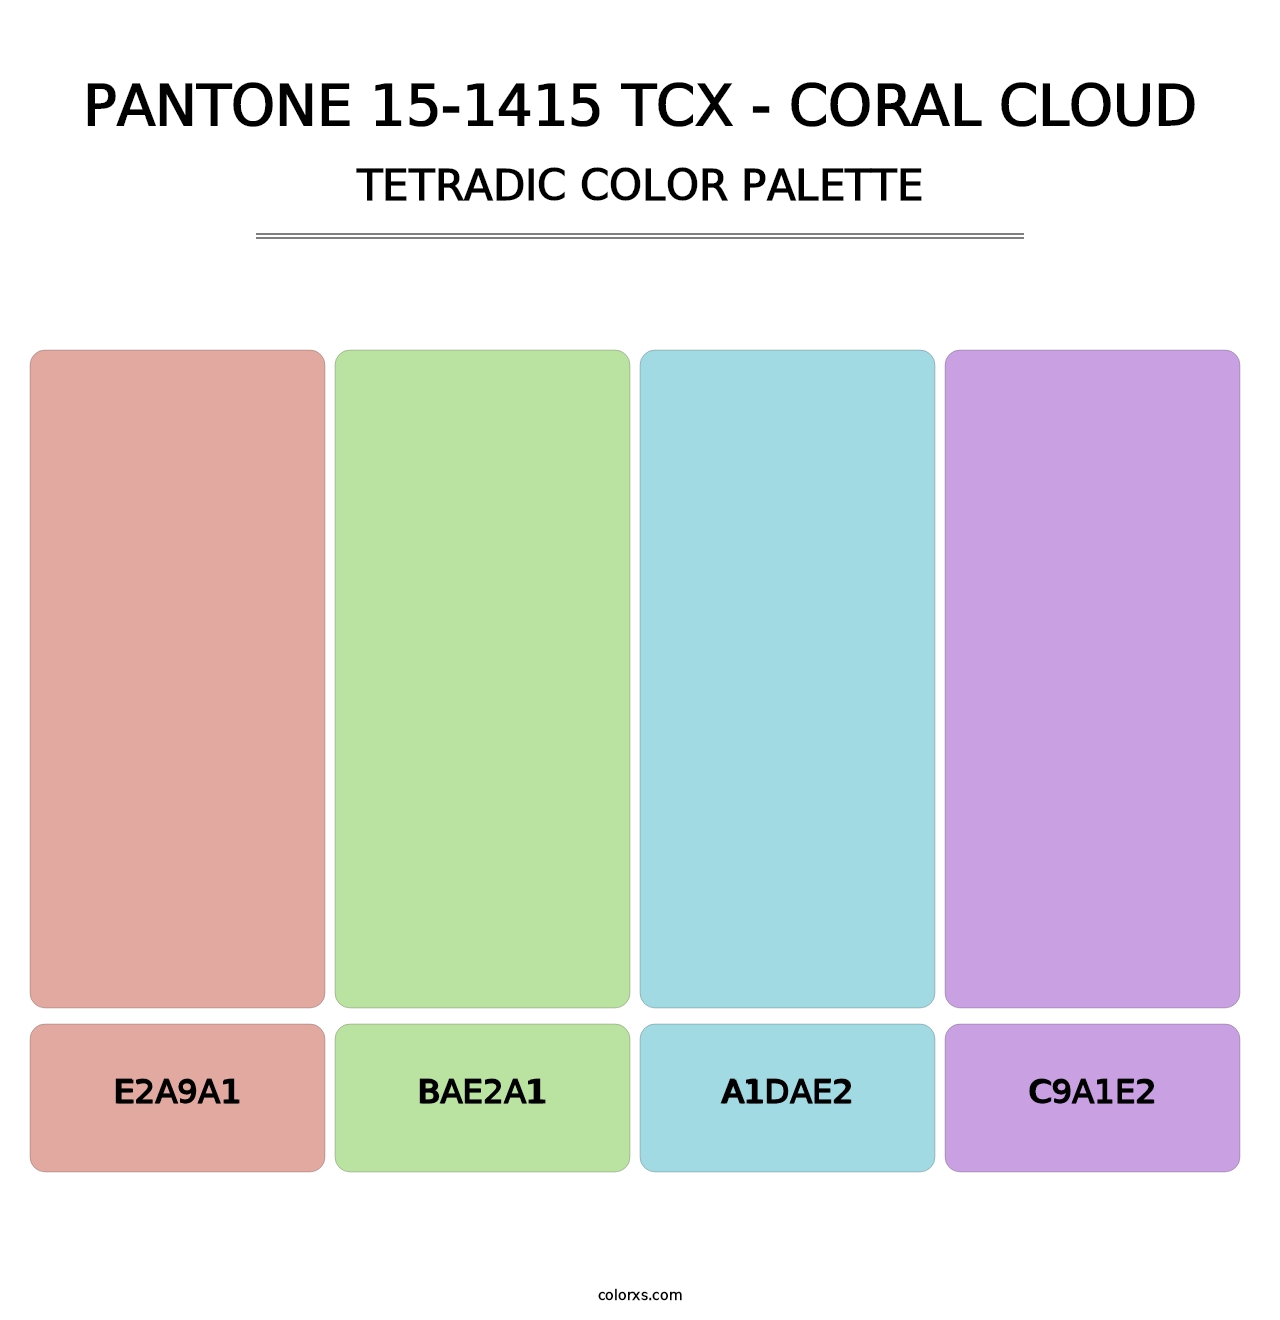 PANTONE 15-1415 TCX - Coral Cloud - Tetradic Color Palette